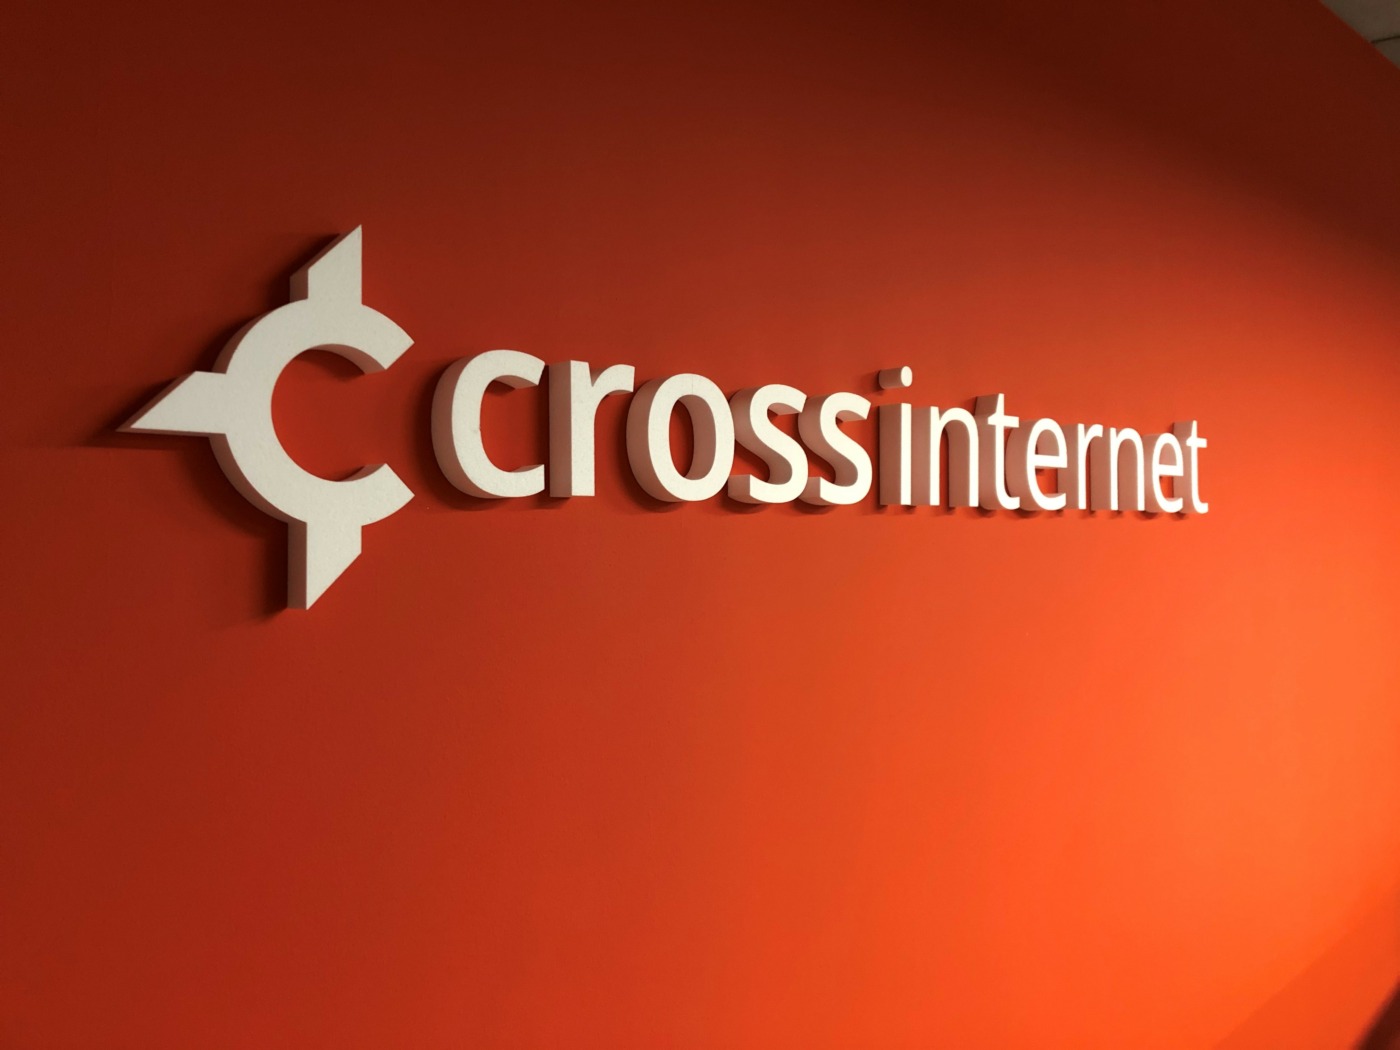 Cross internet logo wit